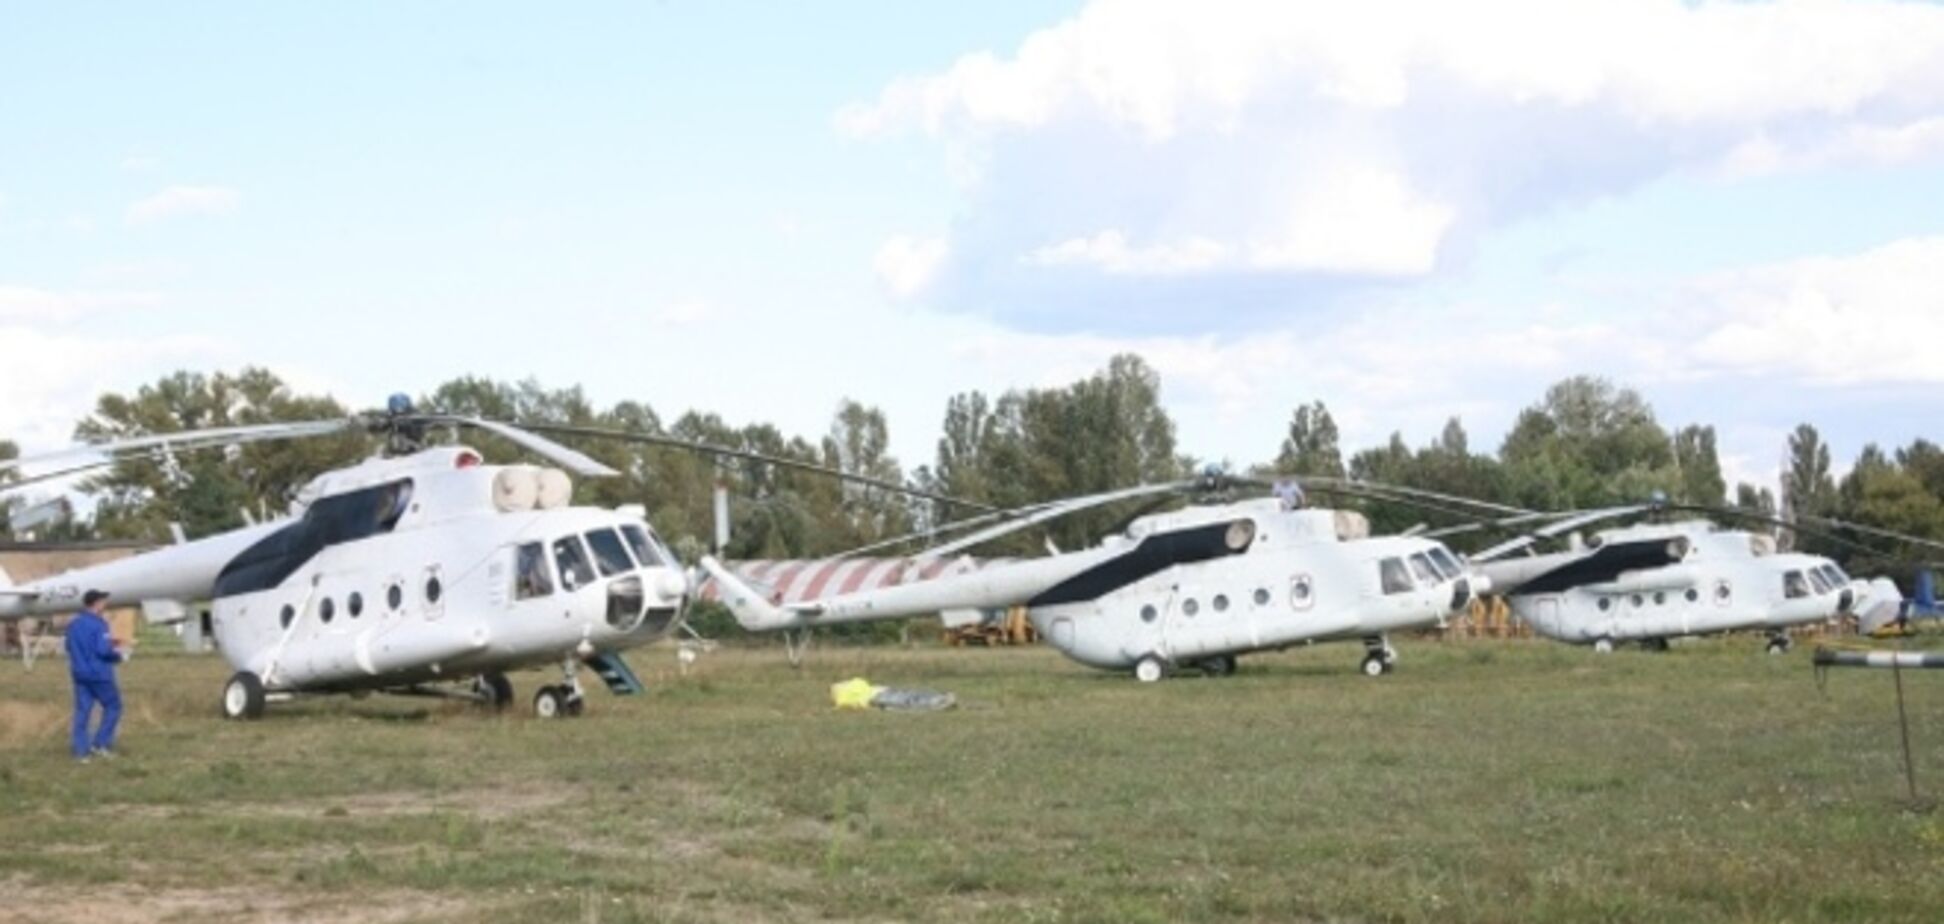 Компания 'Украинские вертолеты' требует у Минобороны принять  арендованные вертолеты